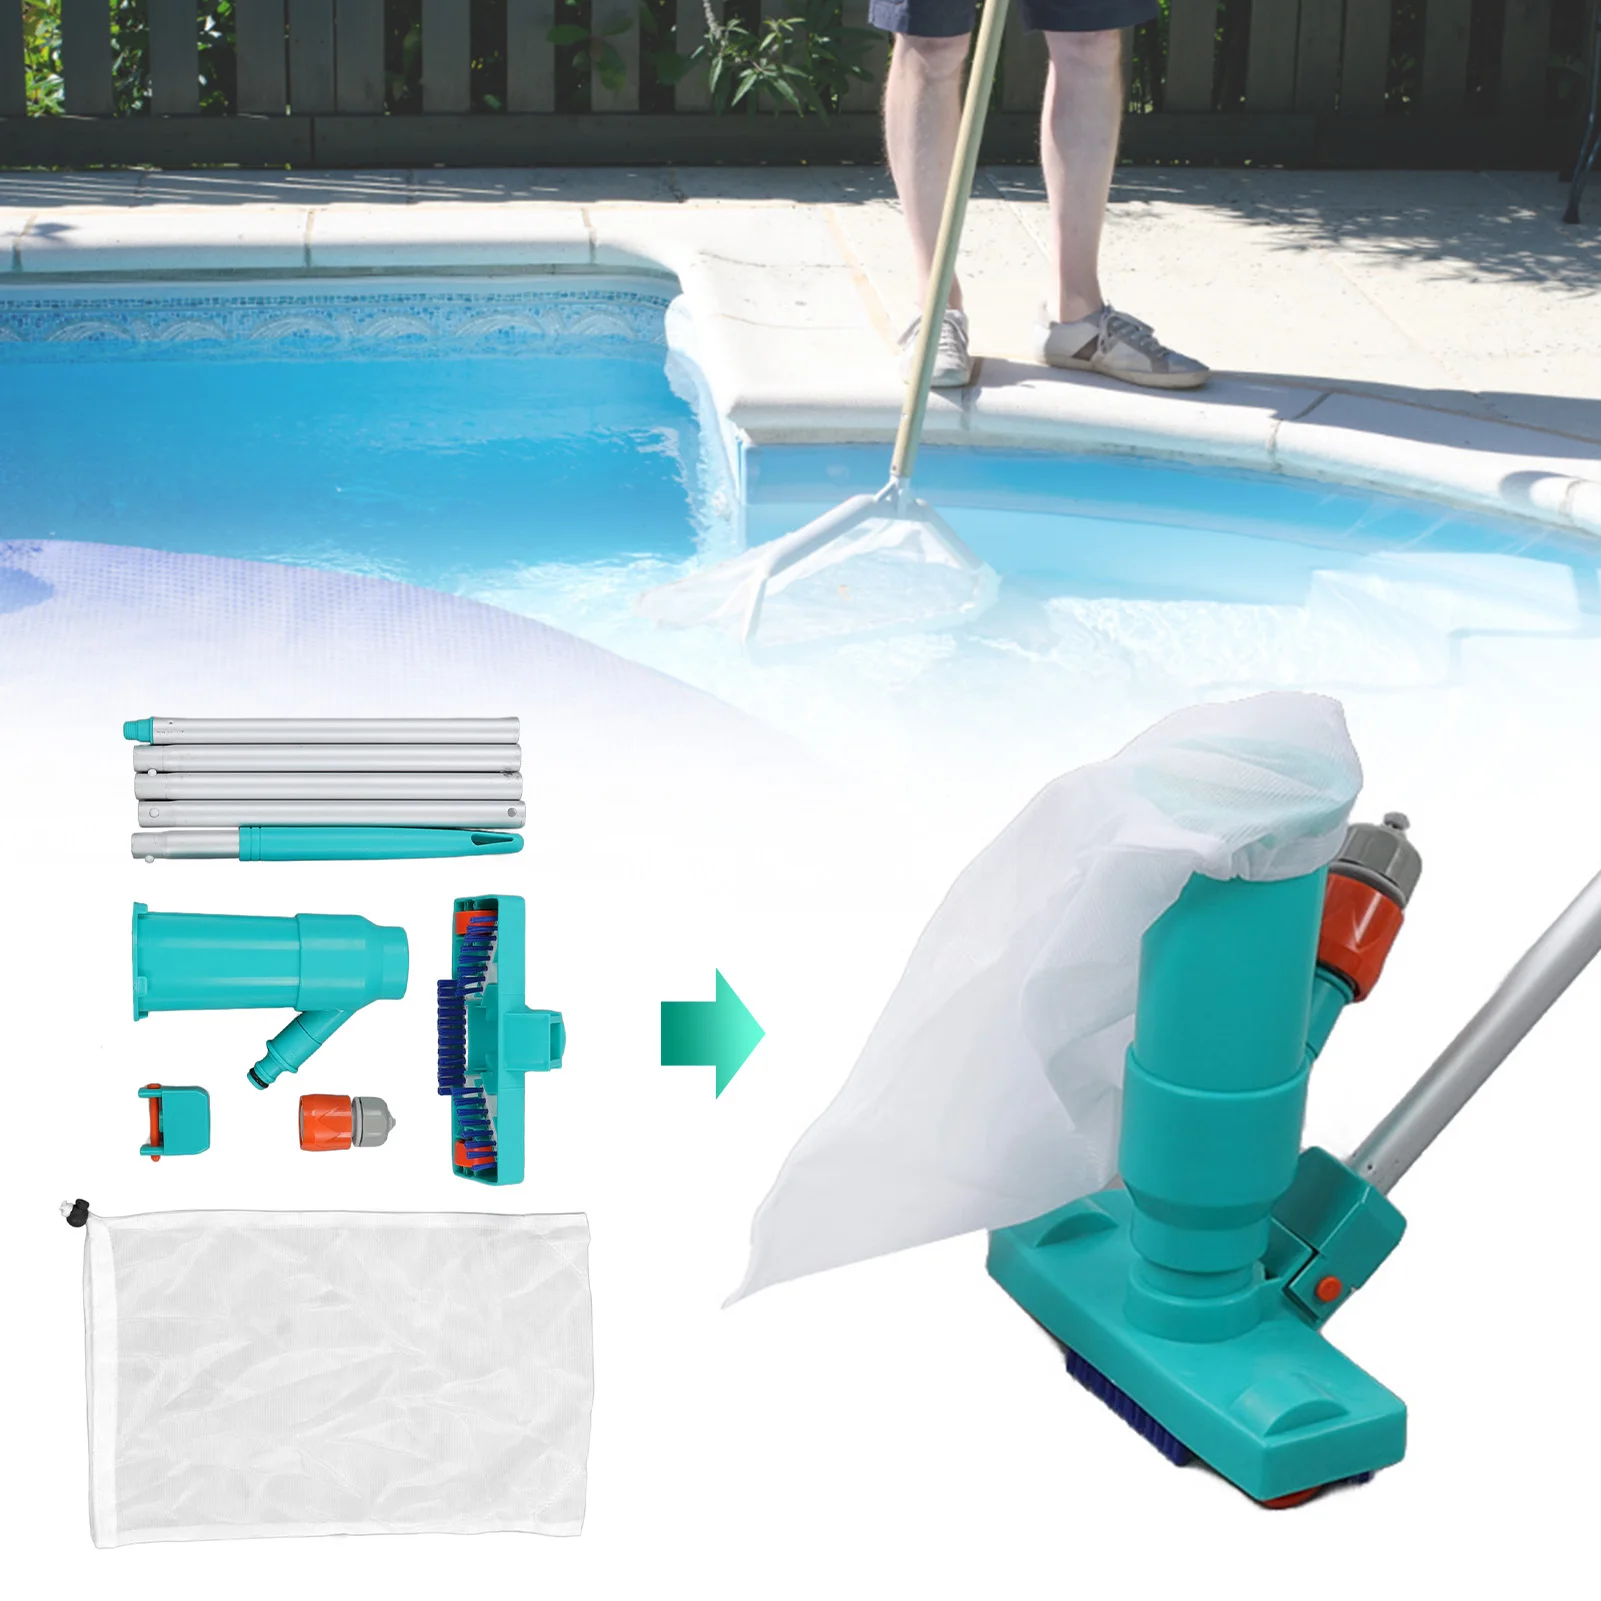 

Вакуумный очиститель для бассейна, инструмент для подводной очистки, с фильтром и щеткой-соединителем, для наземных бассейнов, прудов, фонтанов